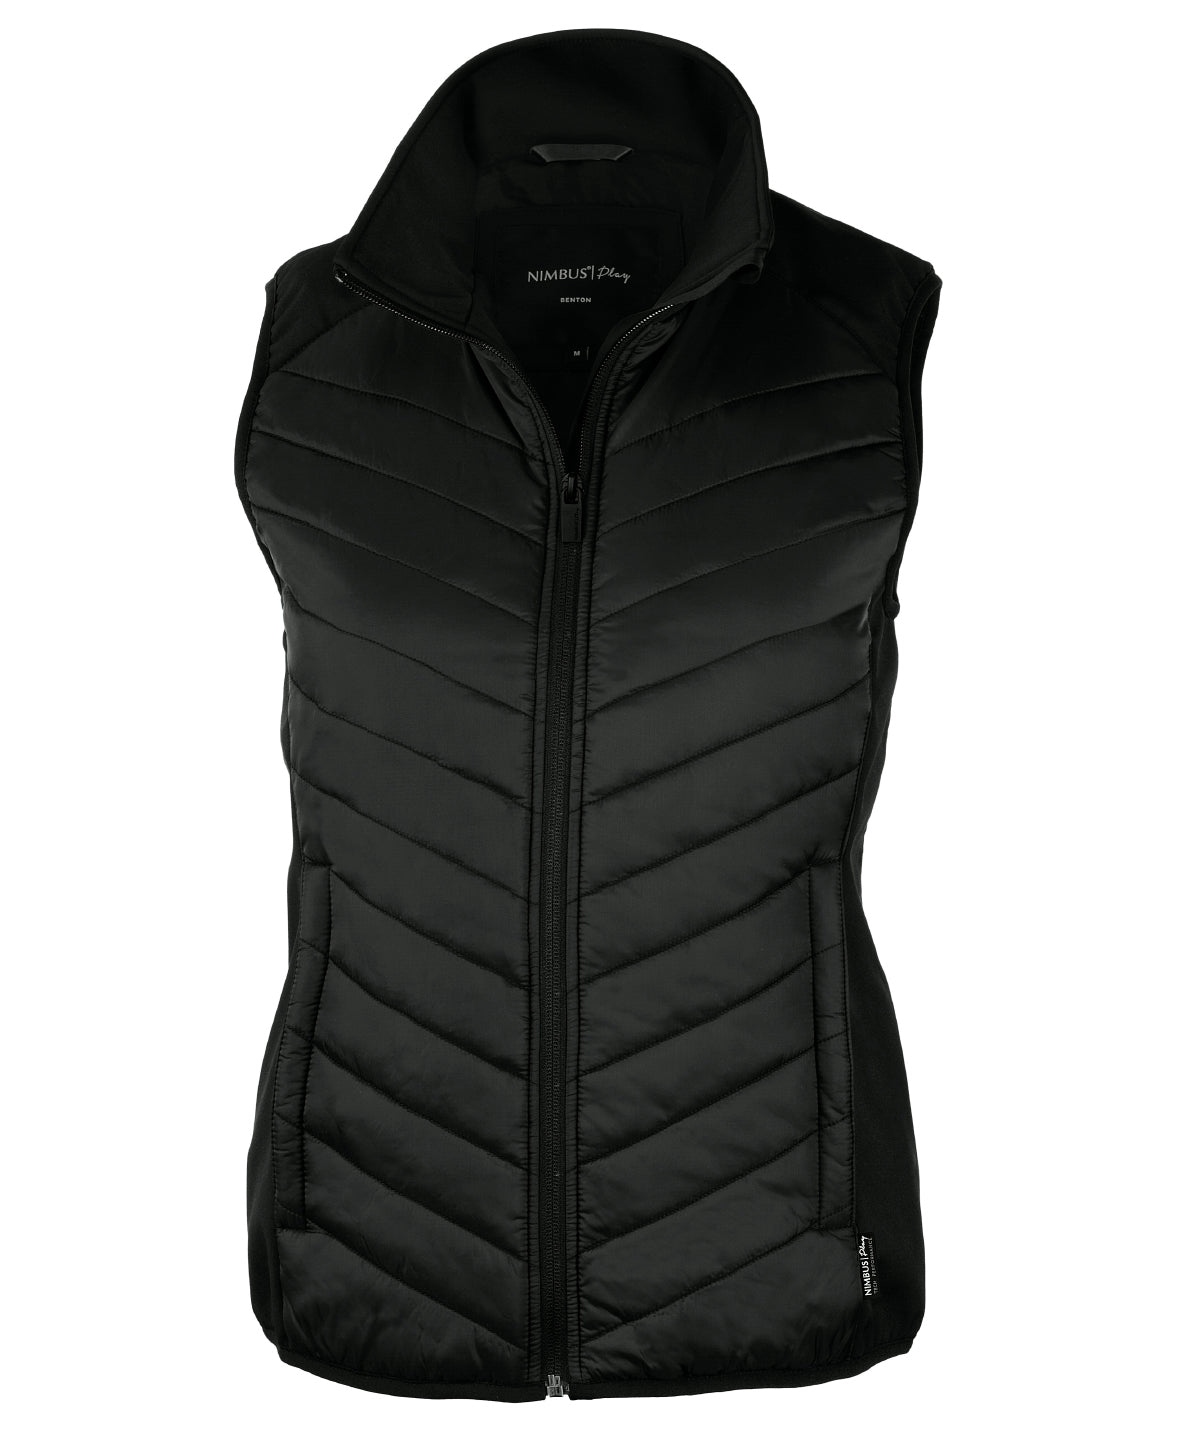 Vesti - Women’s Benton – Versatile Hybrid Vest